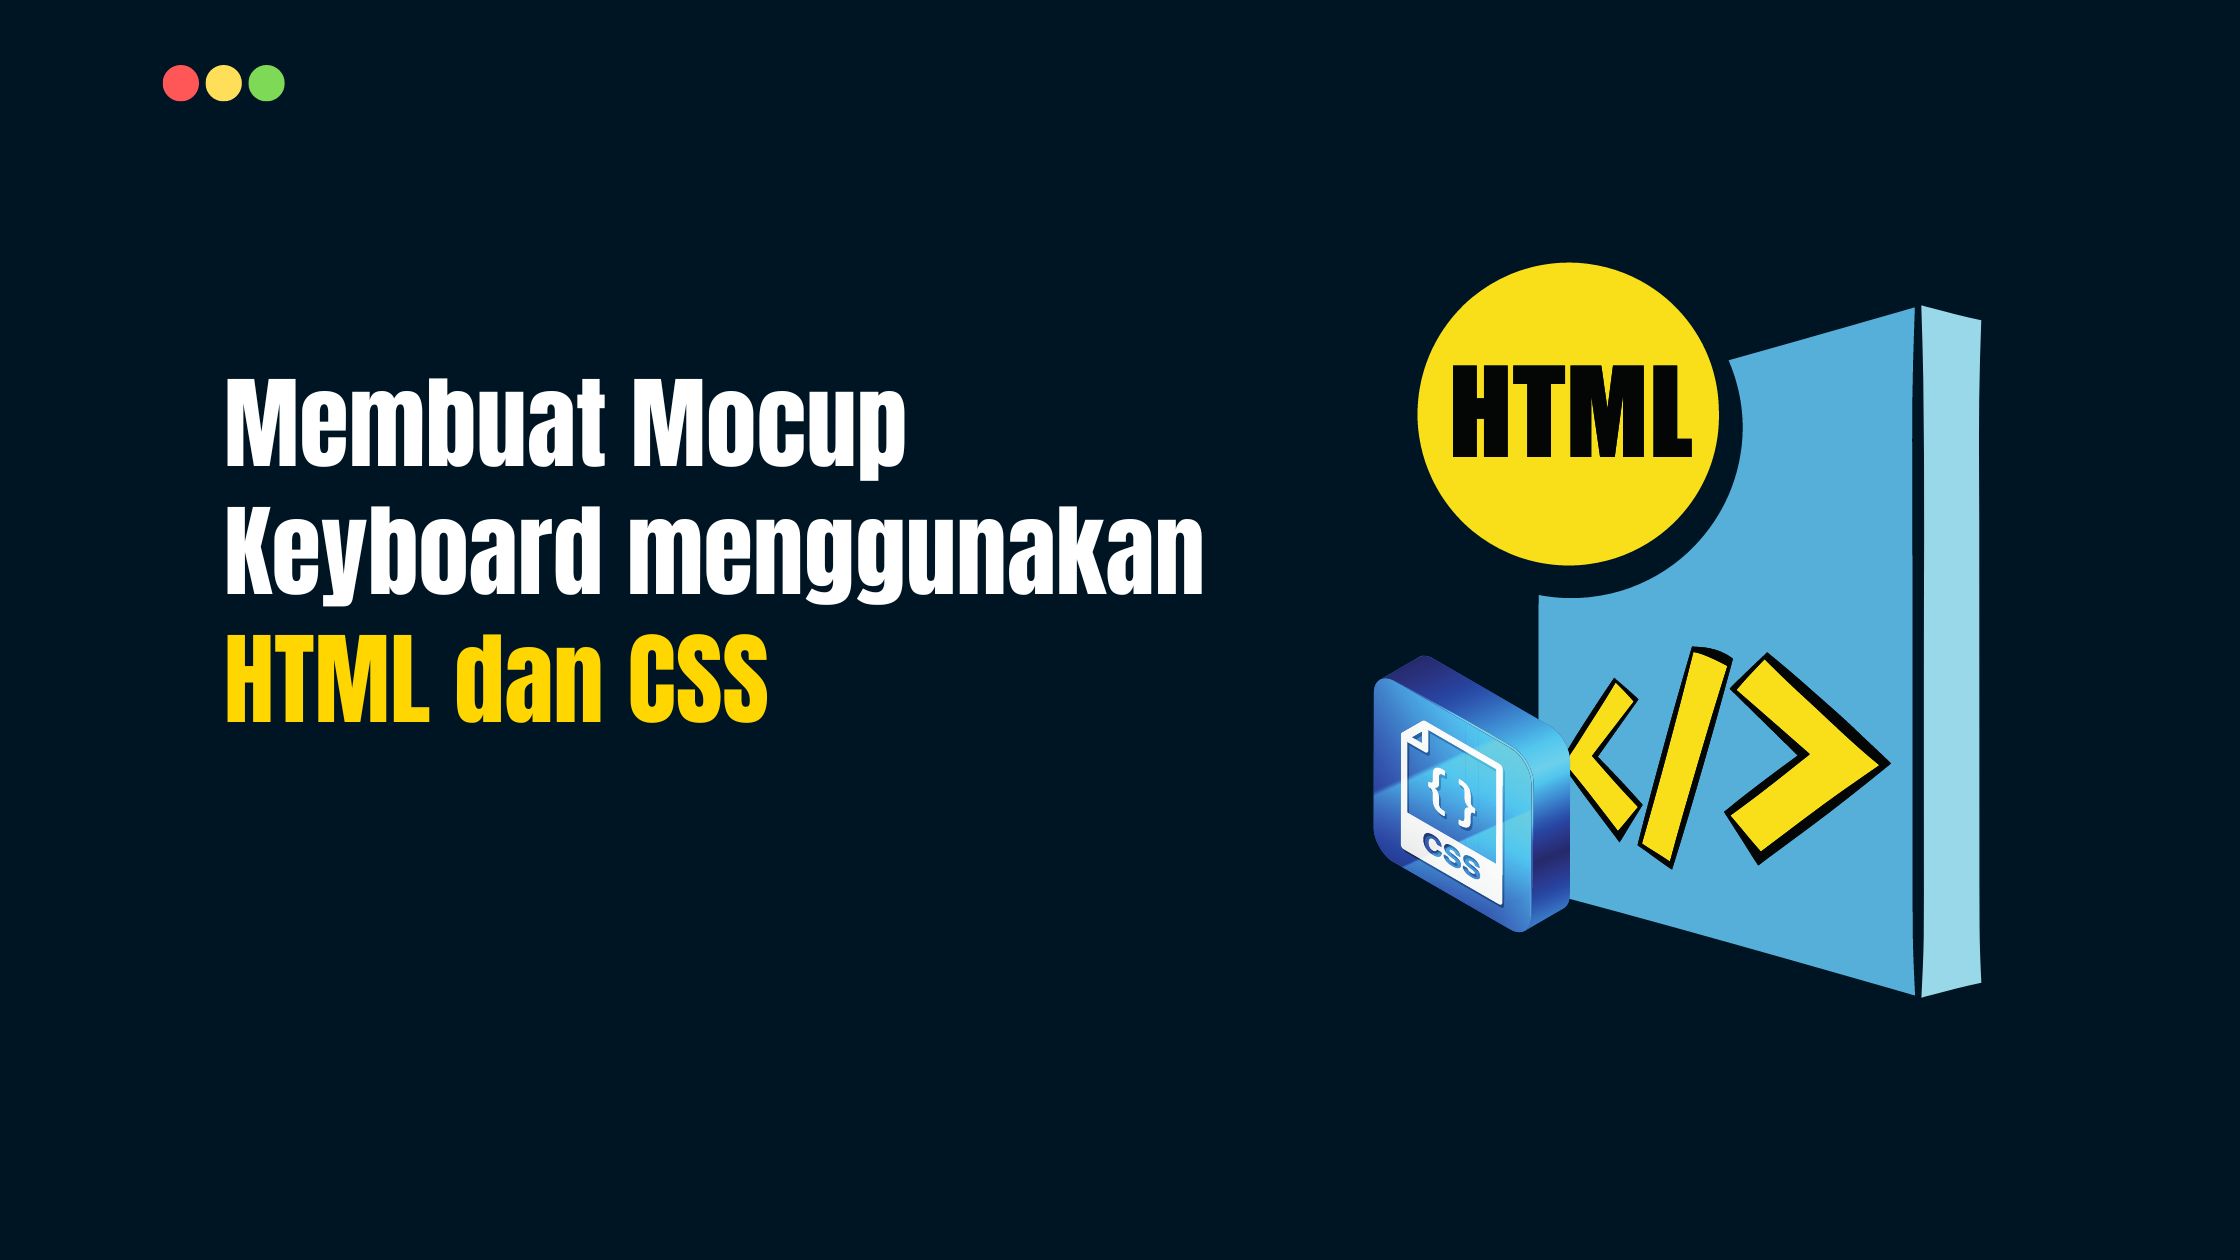 Membuat Mocup Keyboard menggunakan HTML dan CSS [Free Download]